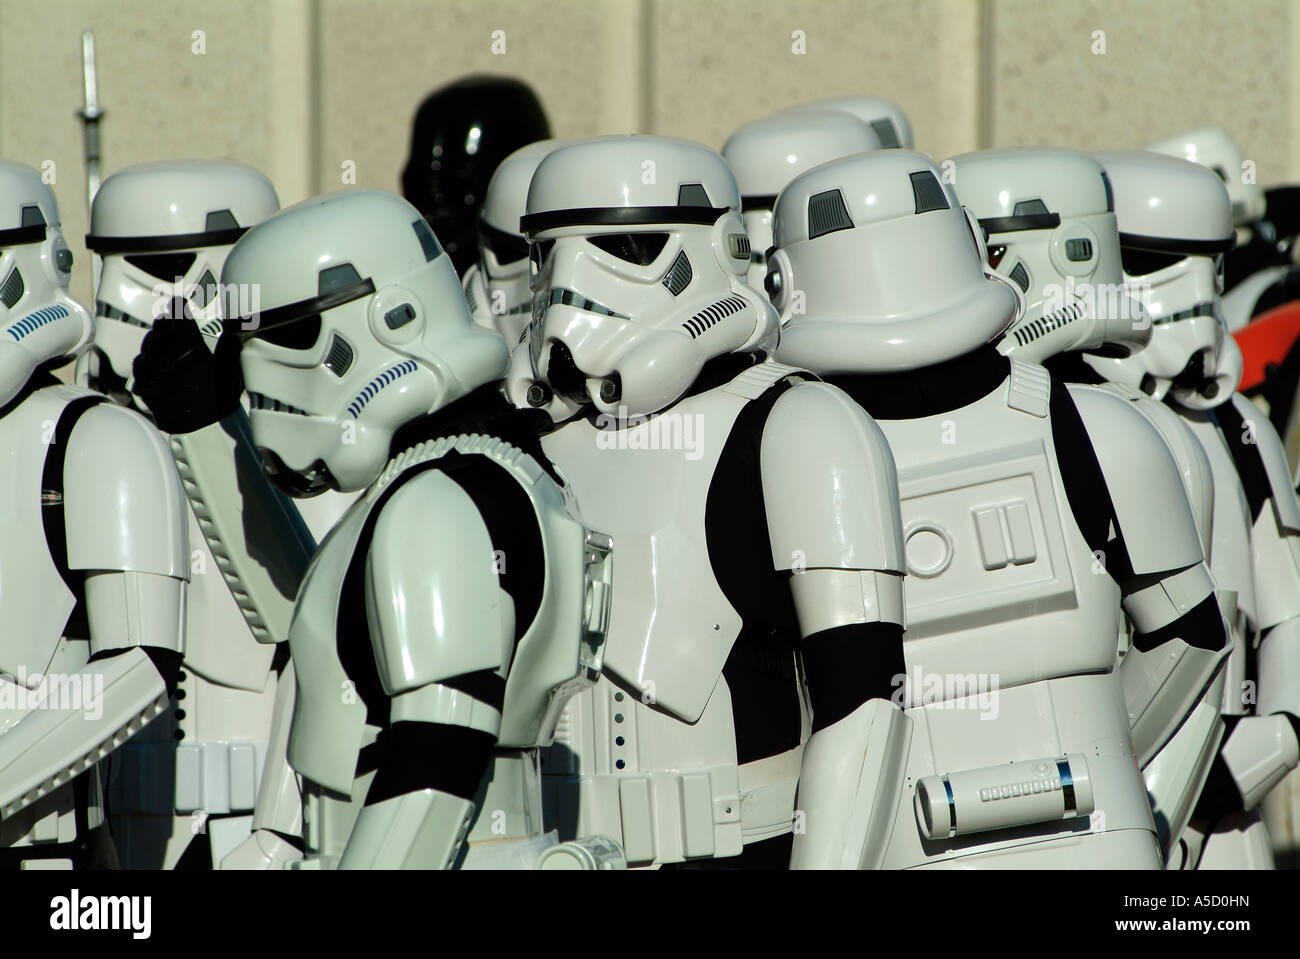 Groupe de star wars storm troopers prête pour un défilé Banque D'Images